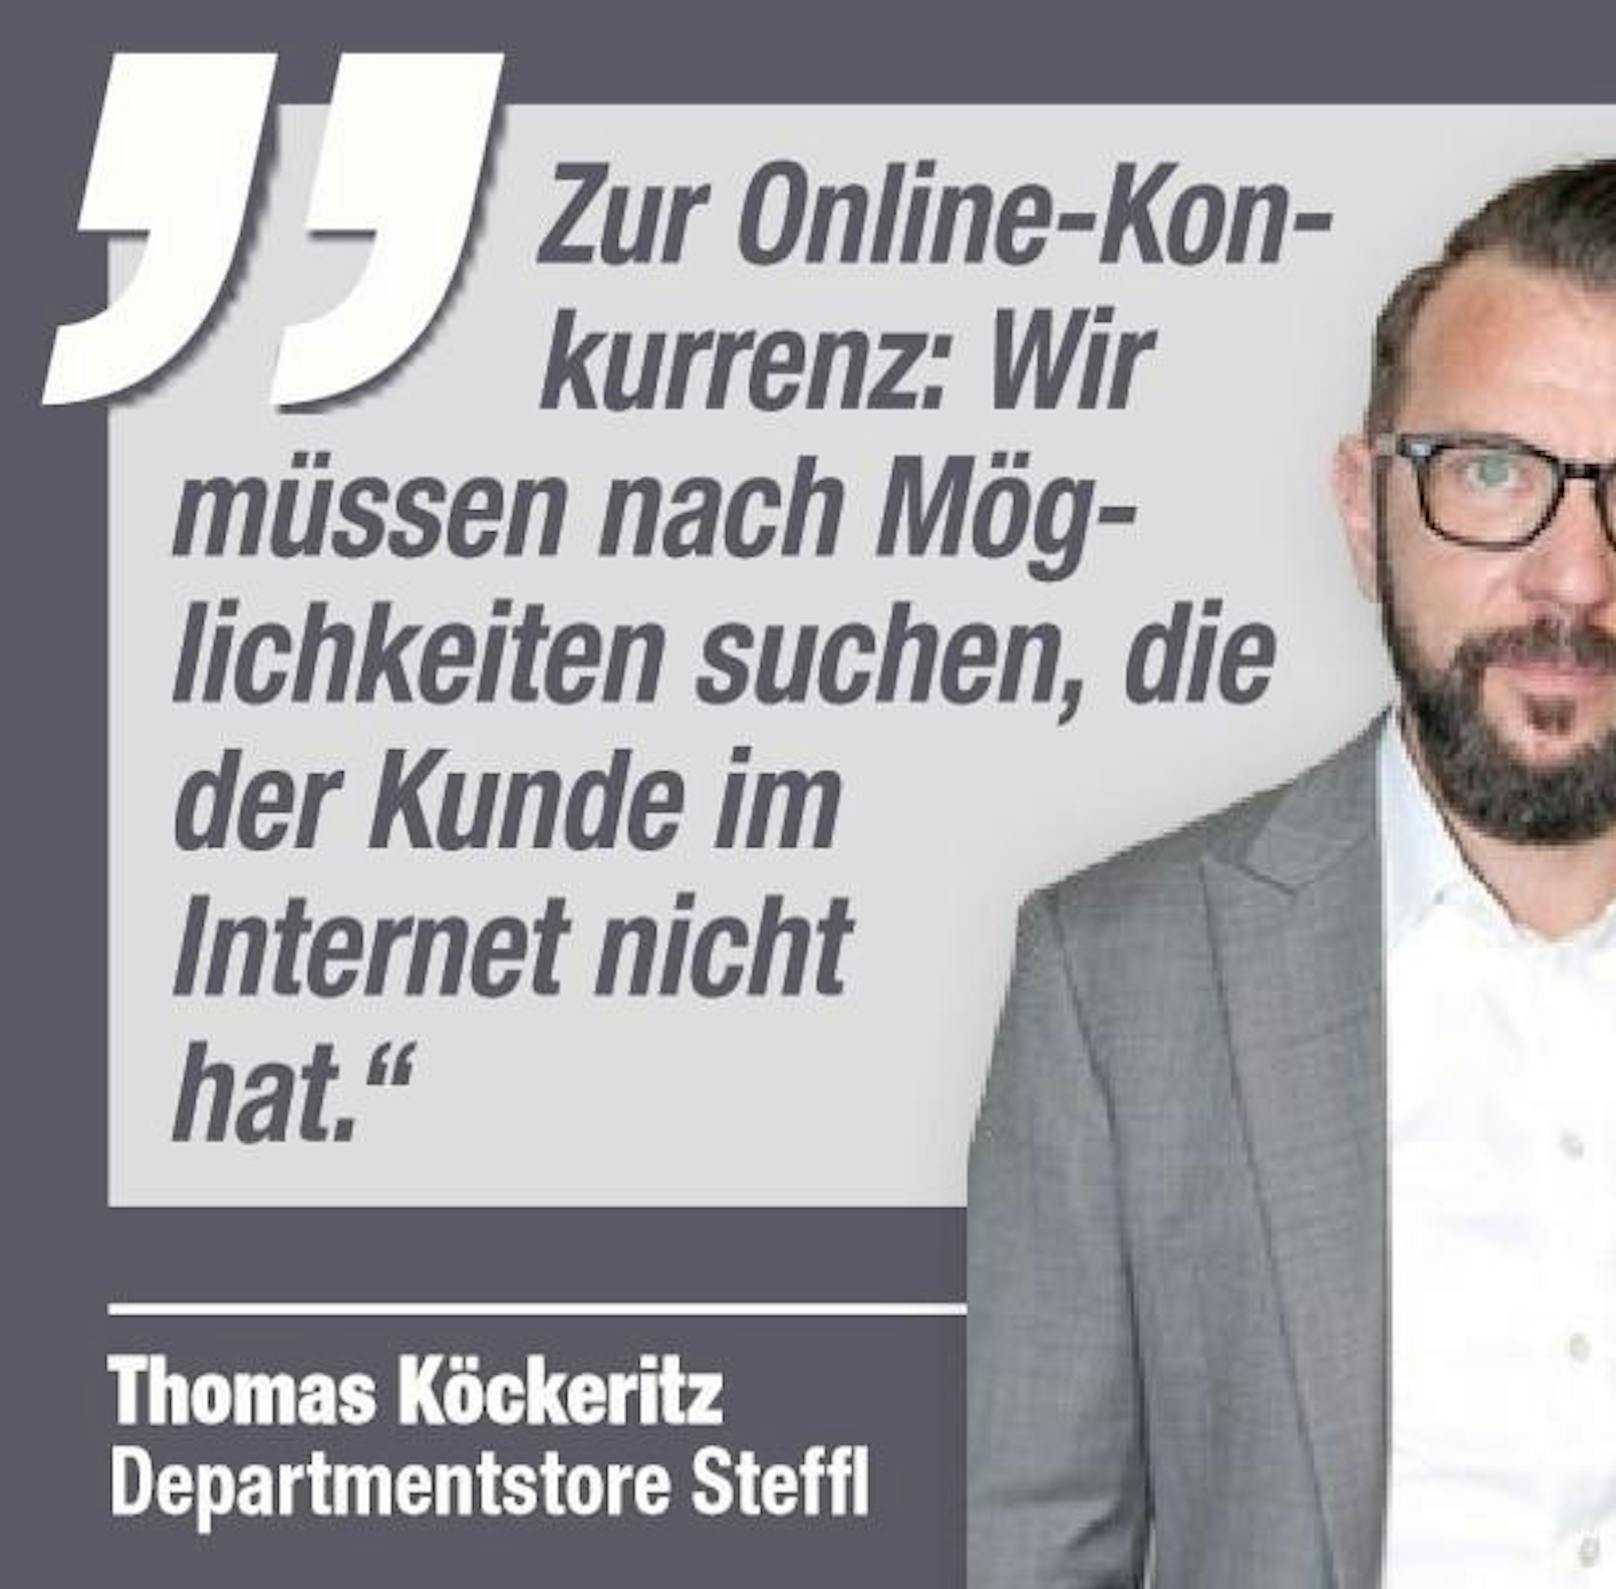 Thomas Köckeritz, Departmentstore Steffl